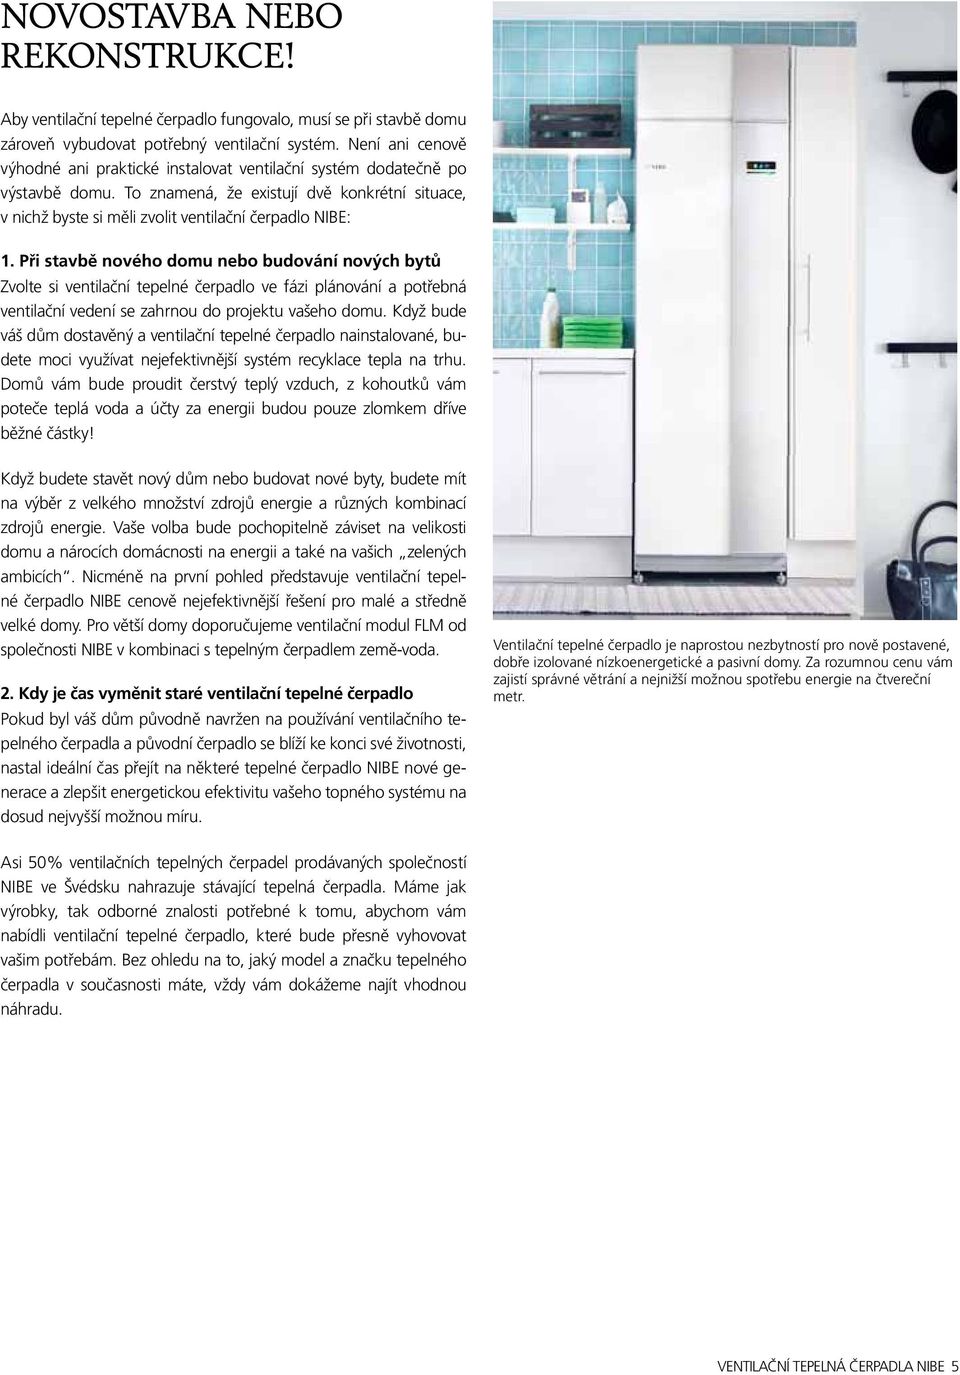 Ventilační tepelná čerpadla NIBE NOVÁ GENERACE TEPELNÝCH ČERPADEL - PDF  Free Download